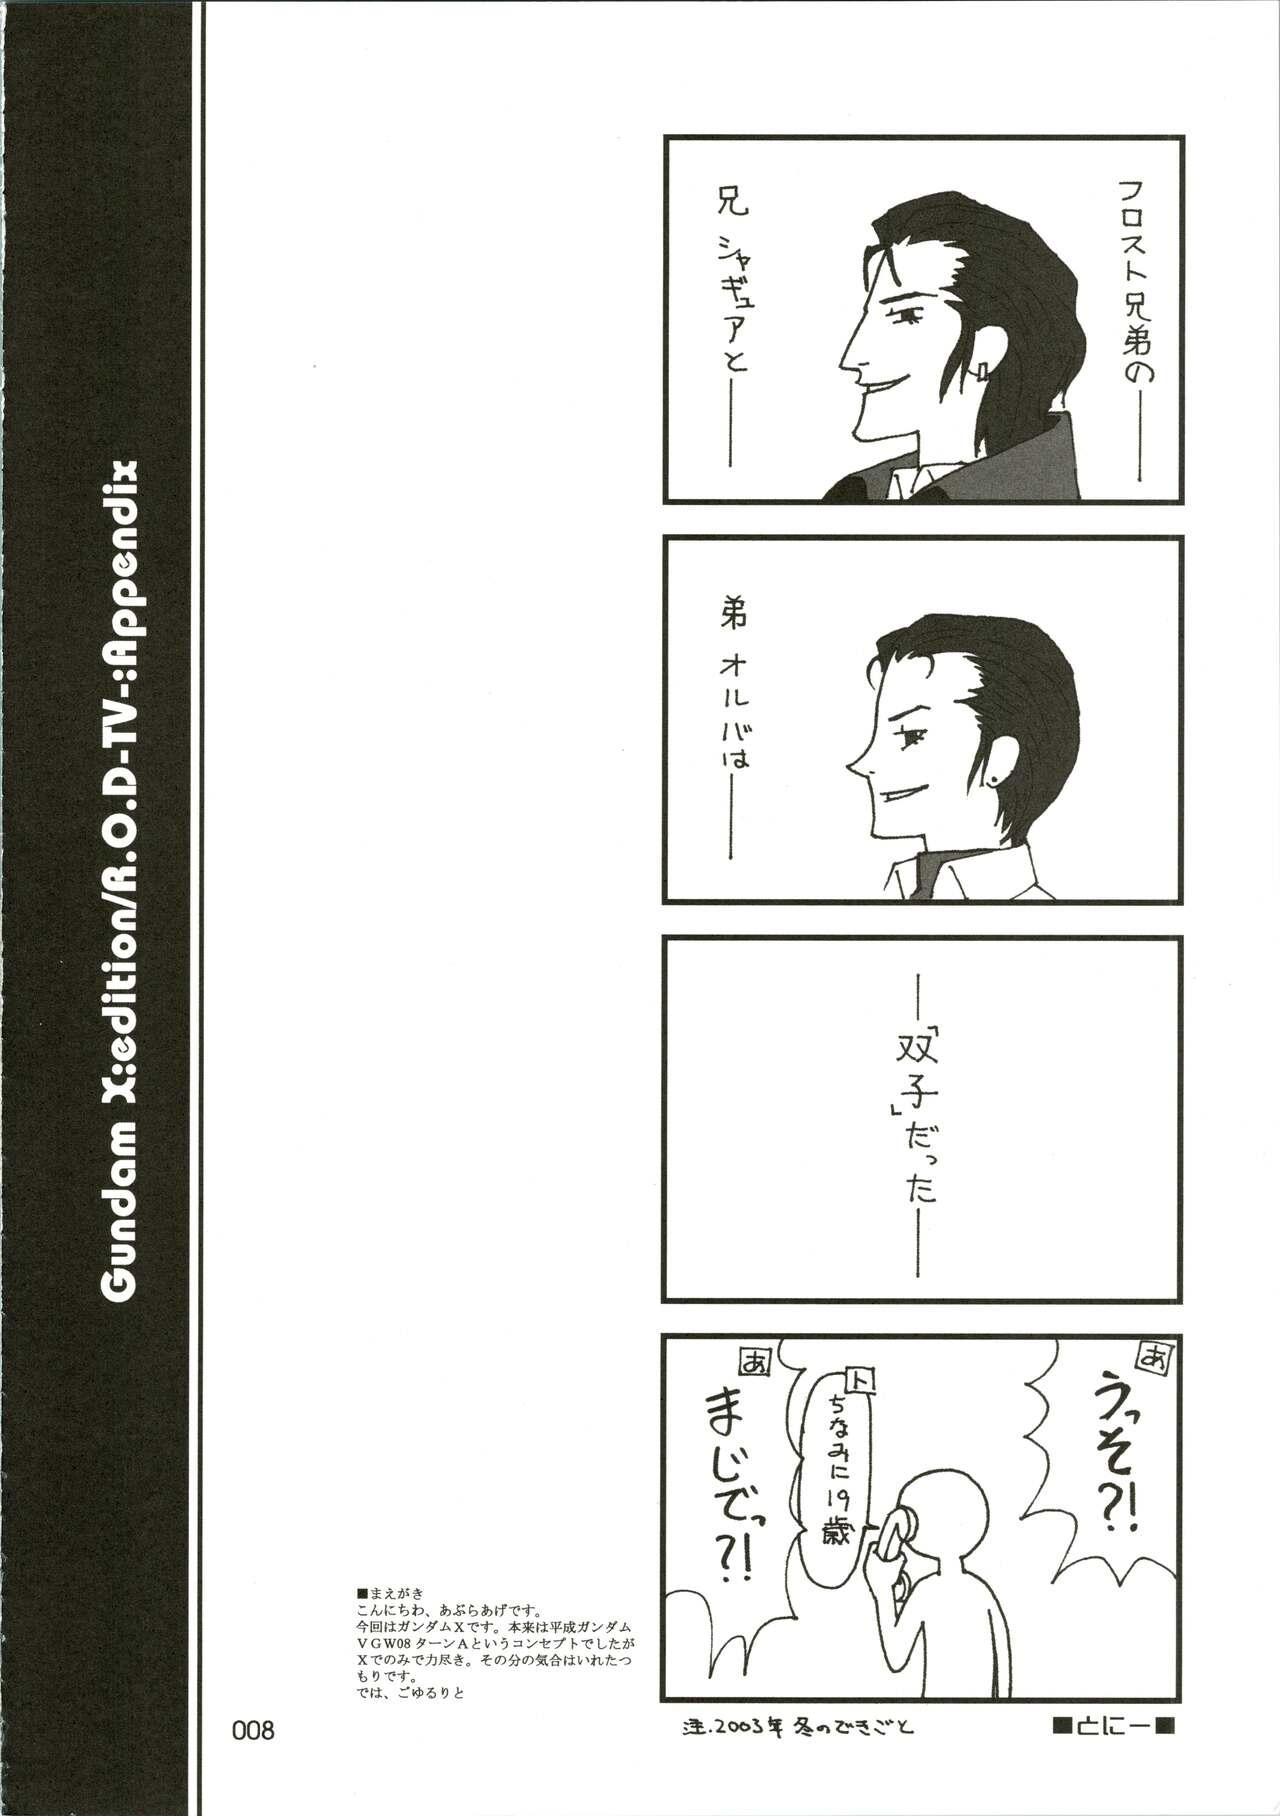 Siririca [WINDFALL (Aburaage)] 303e Vol. 07 (Gundam X, R.O.D the TV) ZHOA8229 - Read or die Gundam x Beard - Page 8